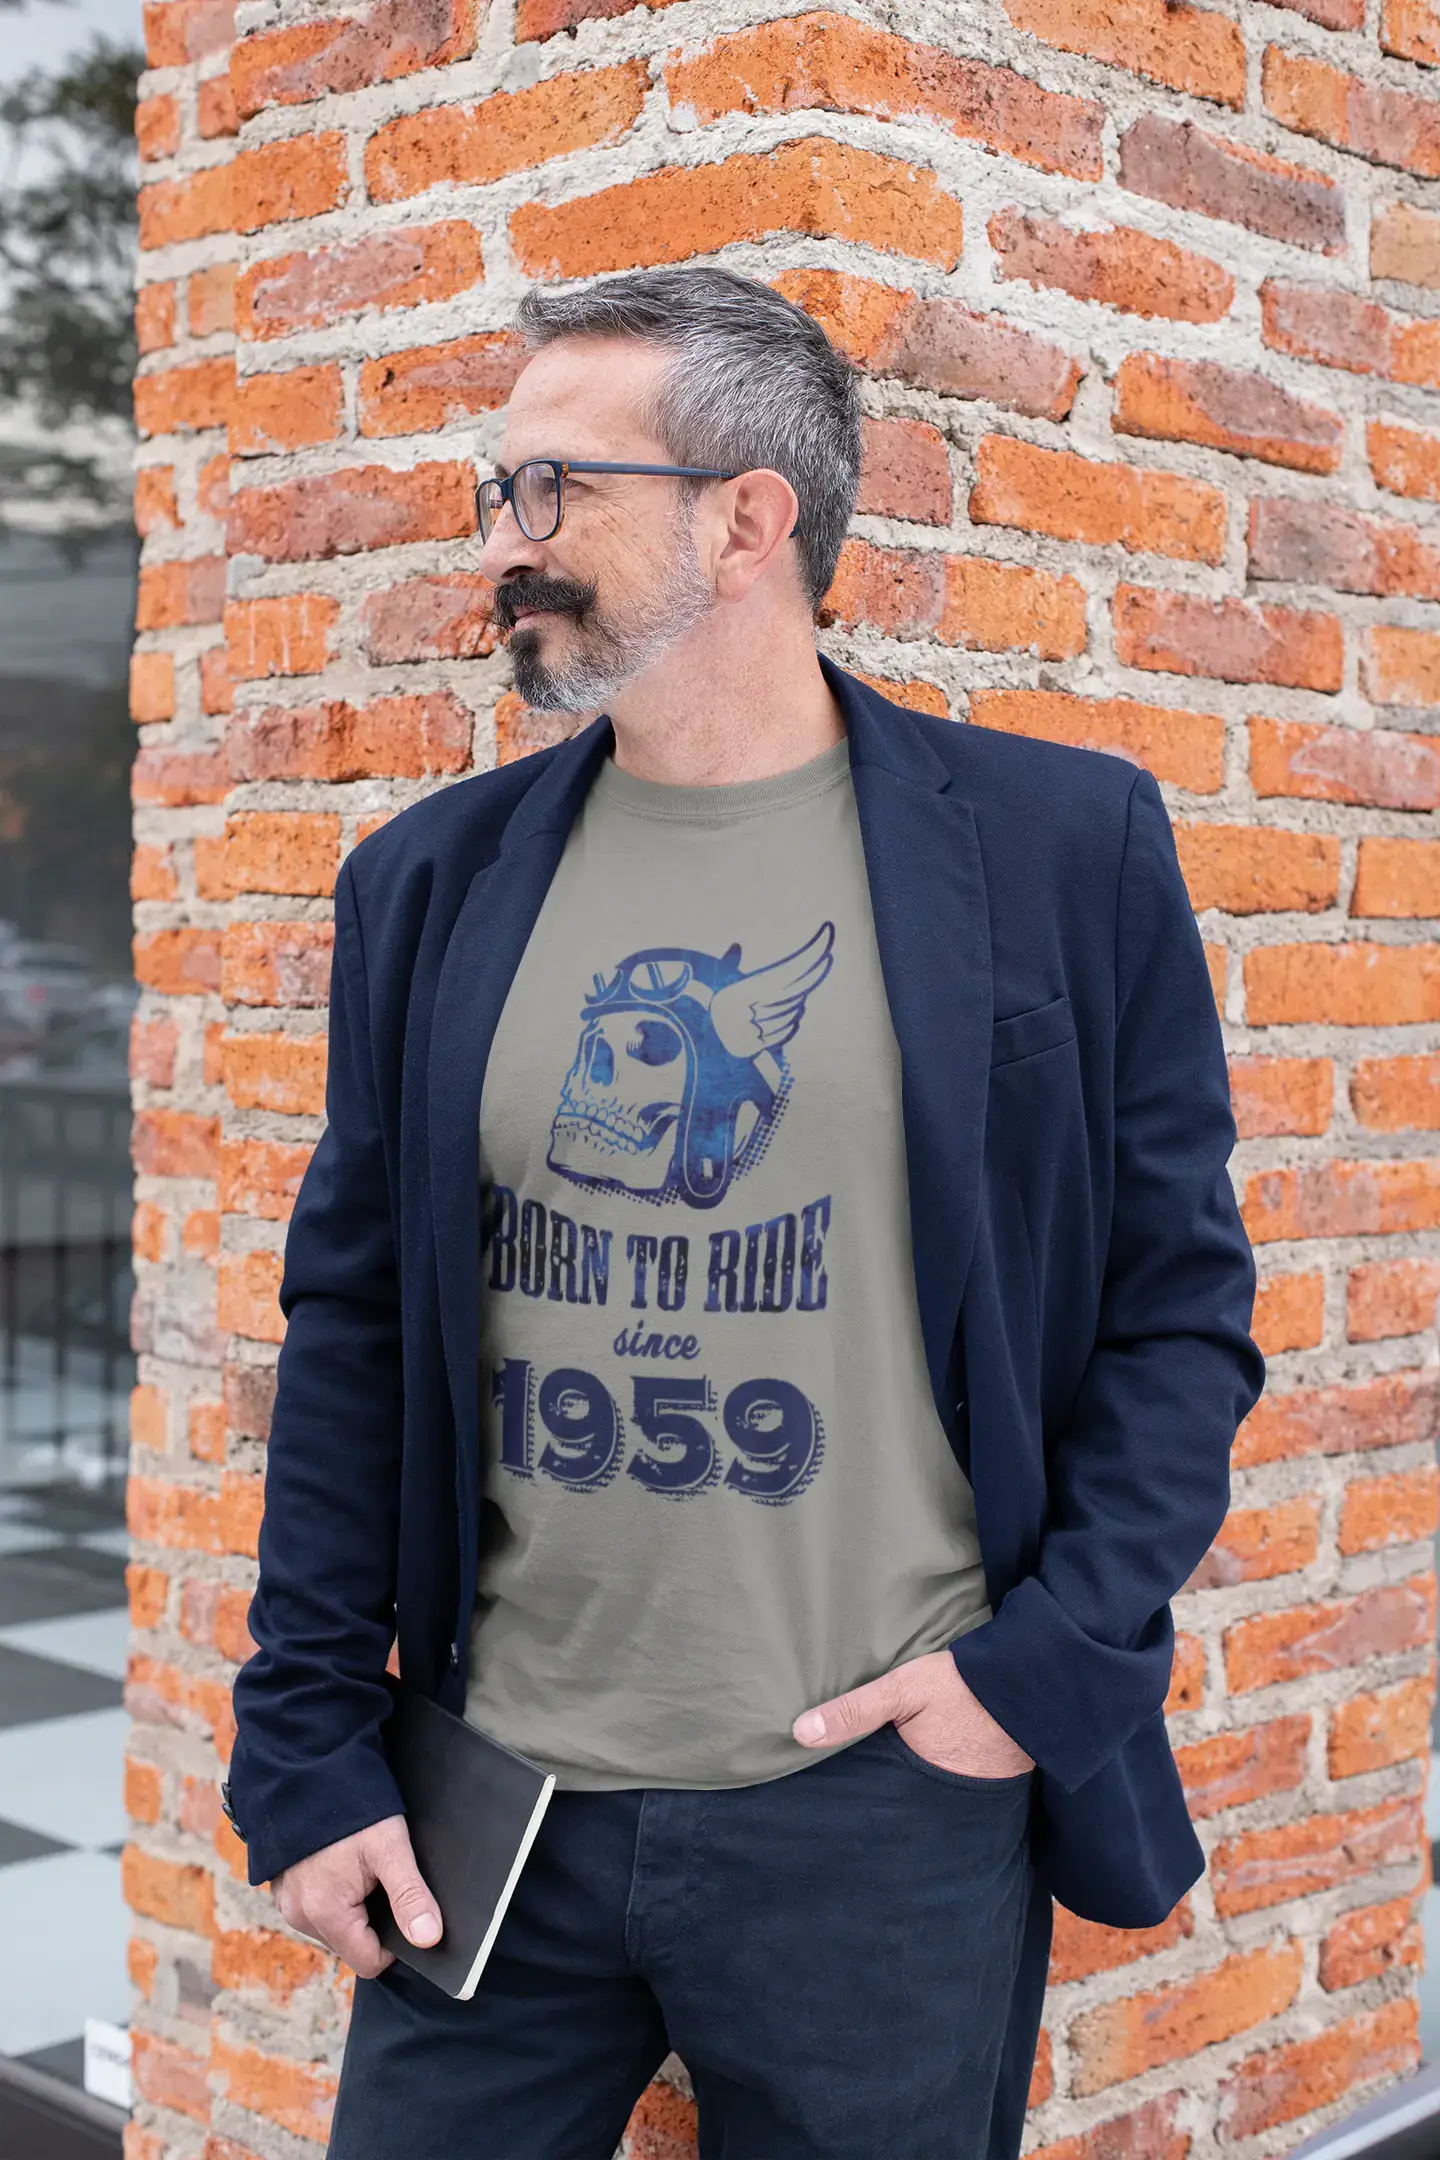 Homme Tee Vintage T Shirt 1959, né pour rouler depuis 1959